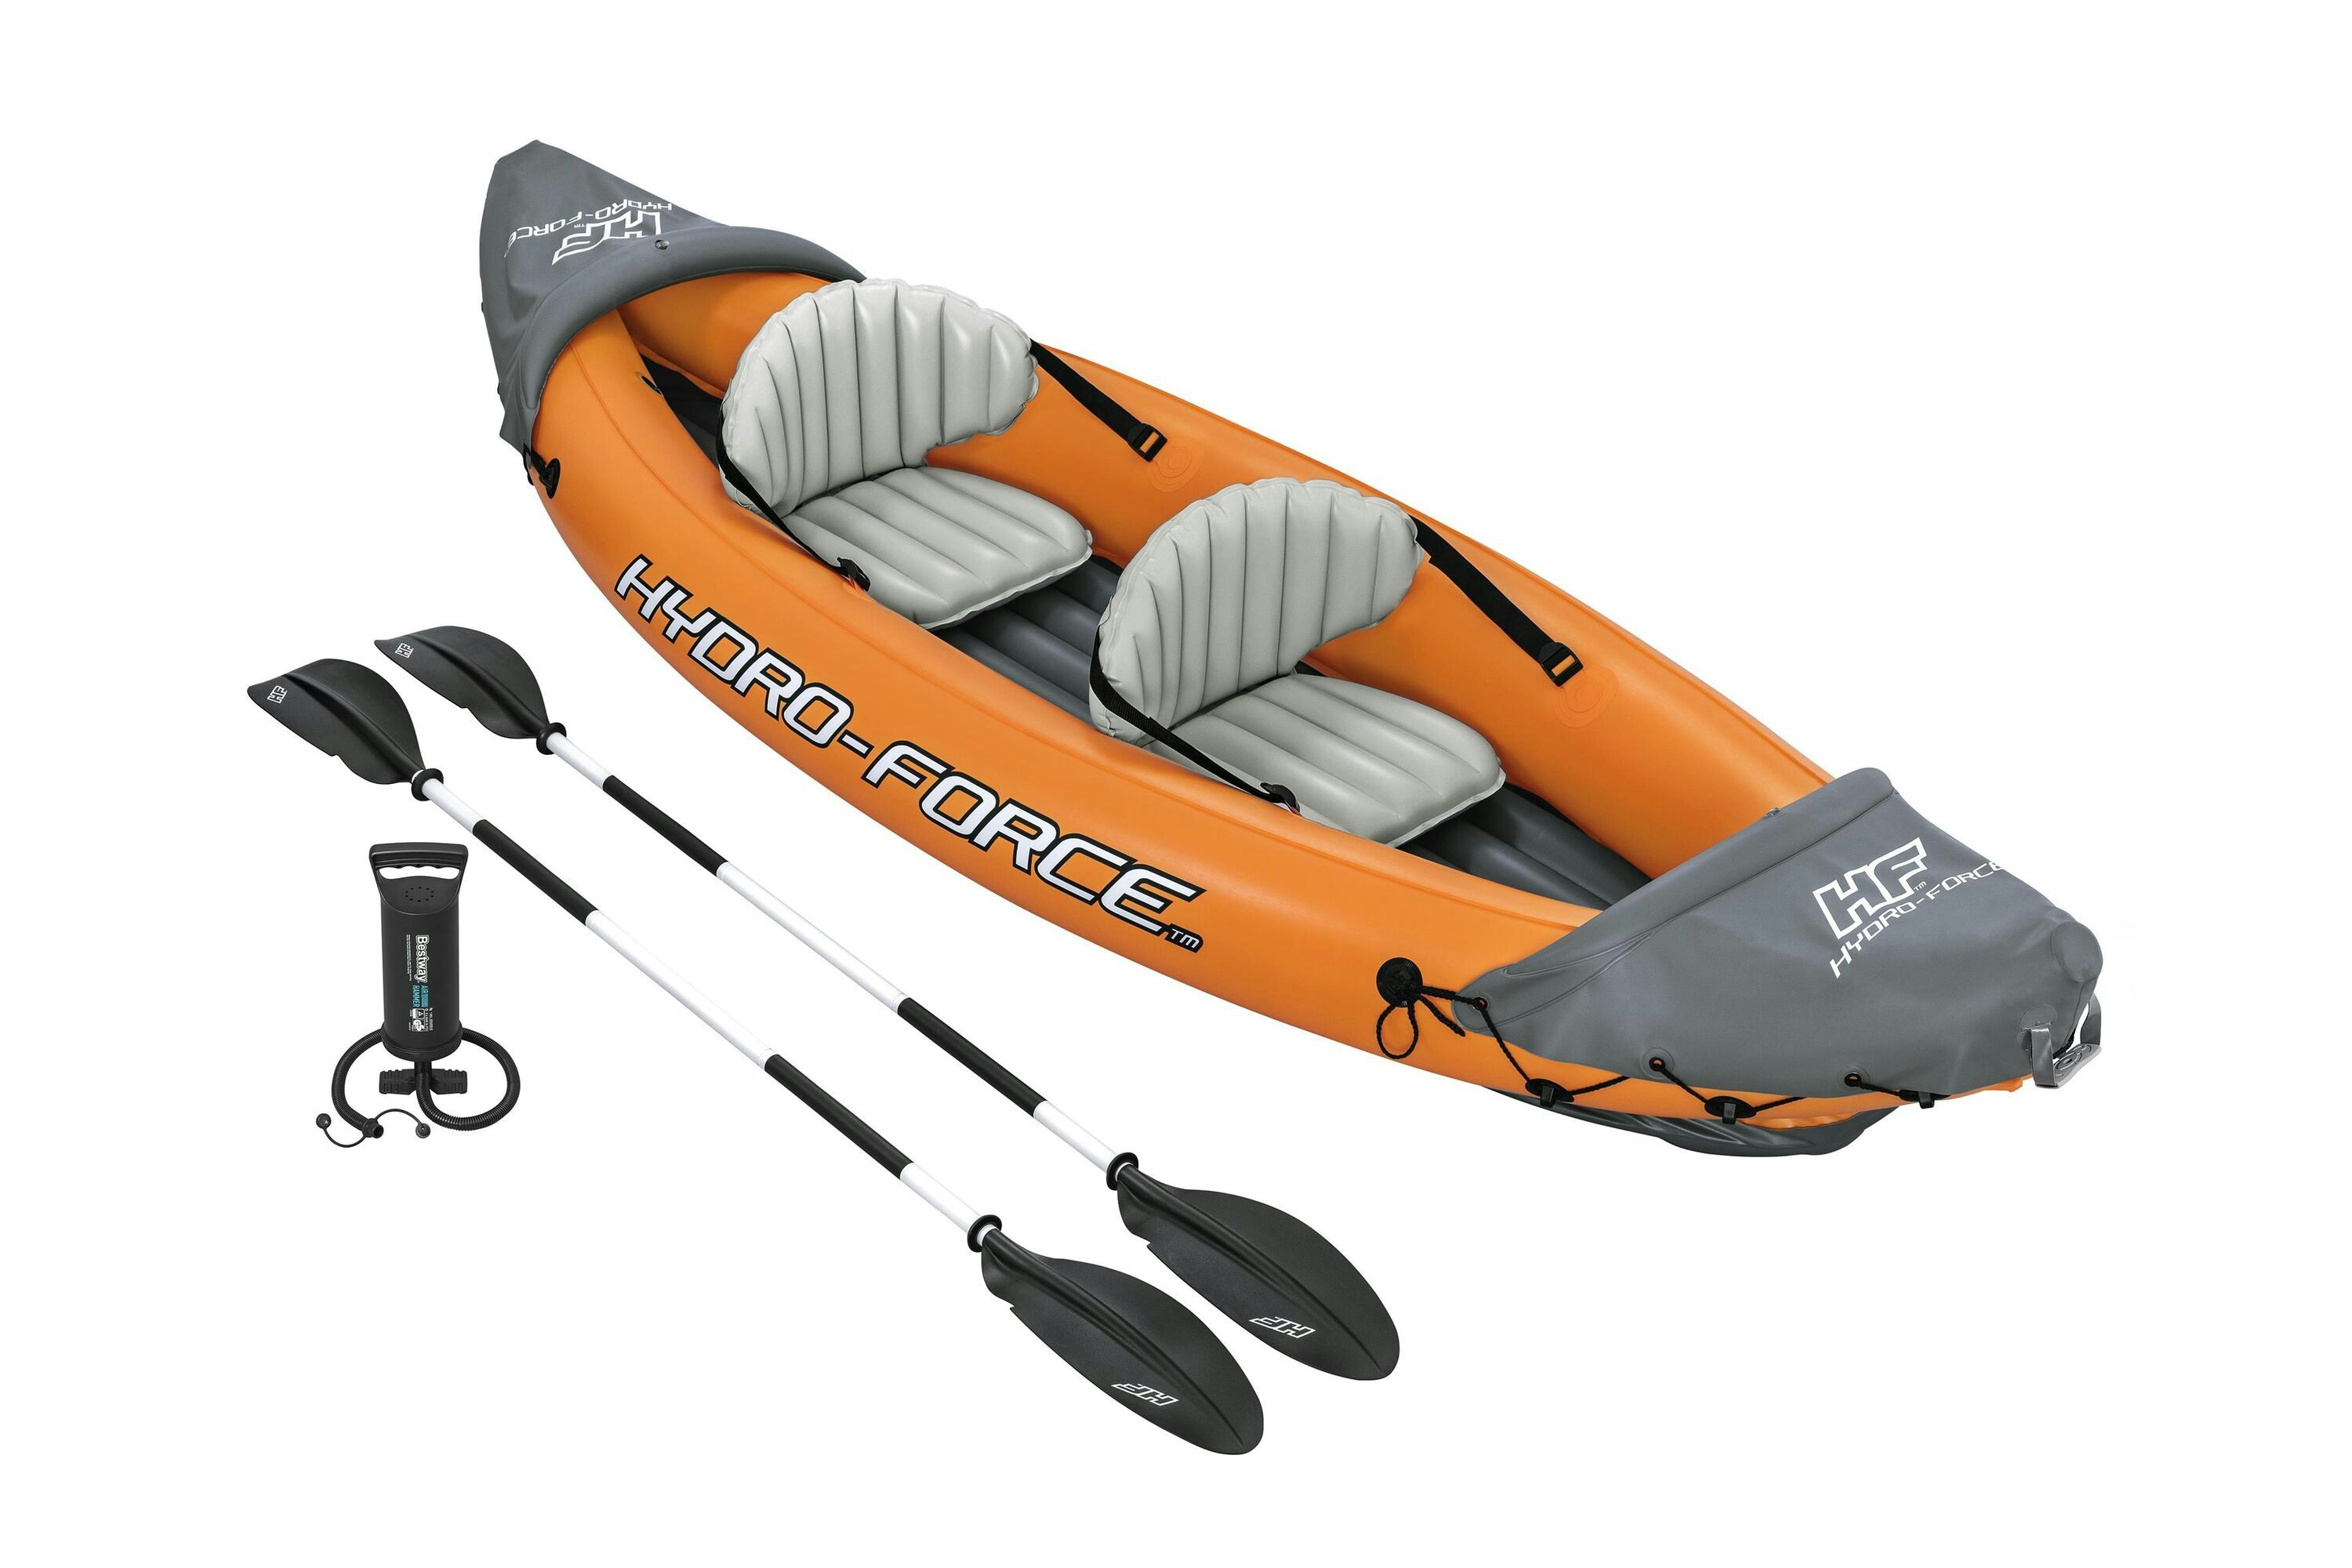 Sports d'eau Kayak gonflable Hydro-Force™ Rapid X2 321 x 100 cm avec 2 pagaies et une pompe Bestway 1